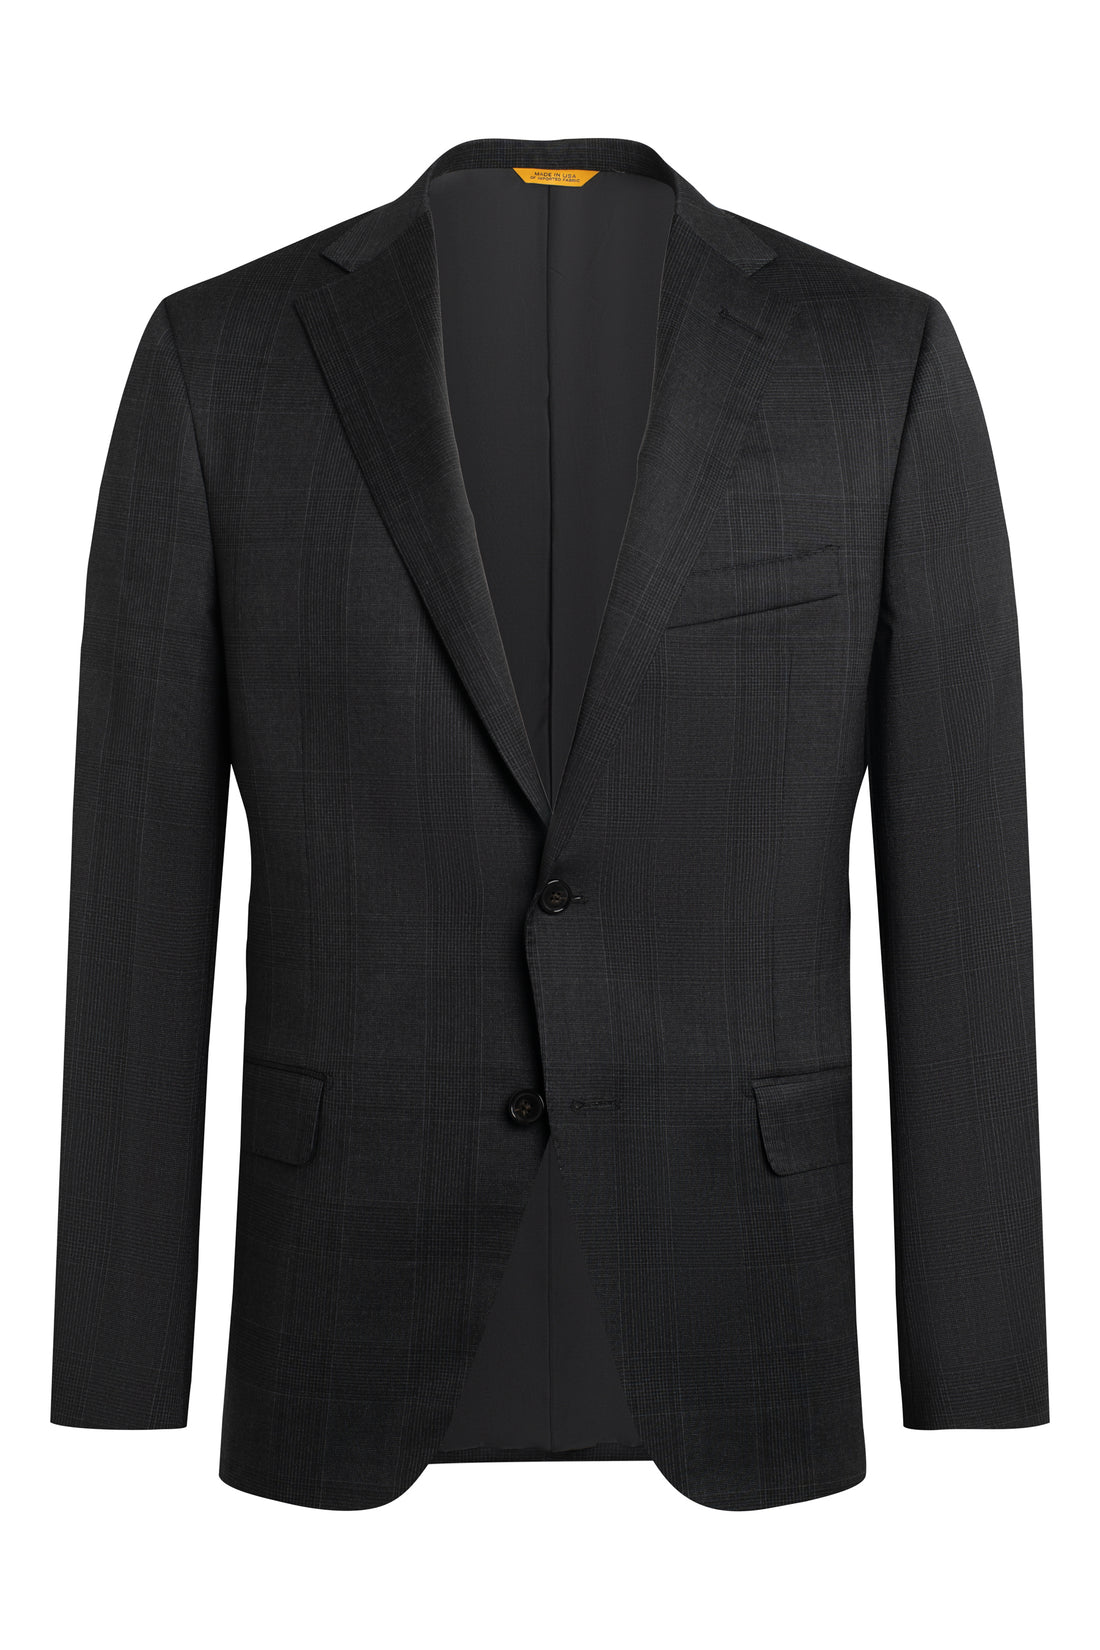 Charcoal Plaid Suit Jacket